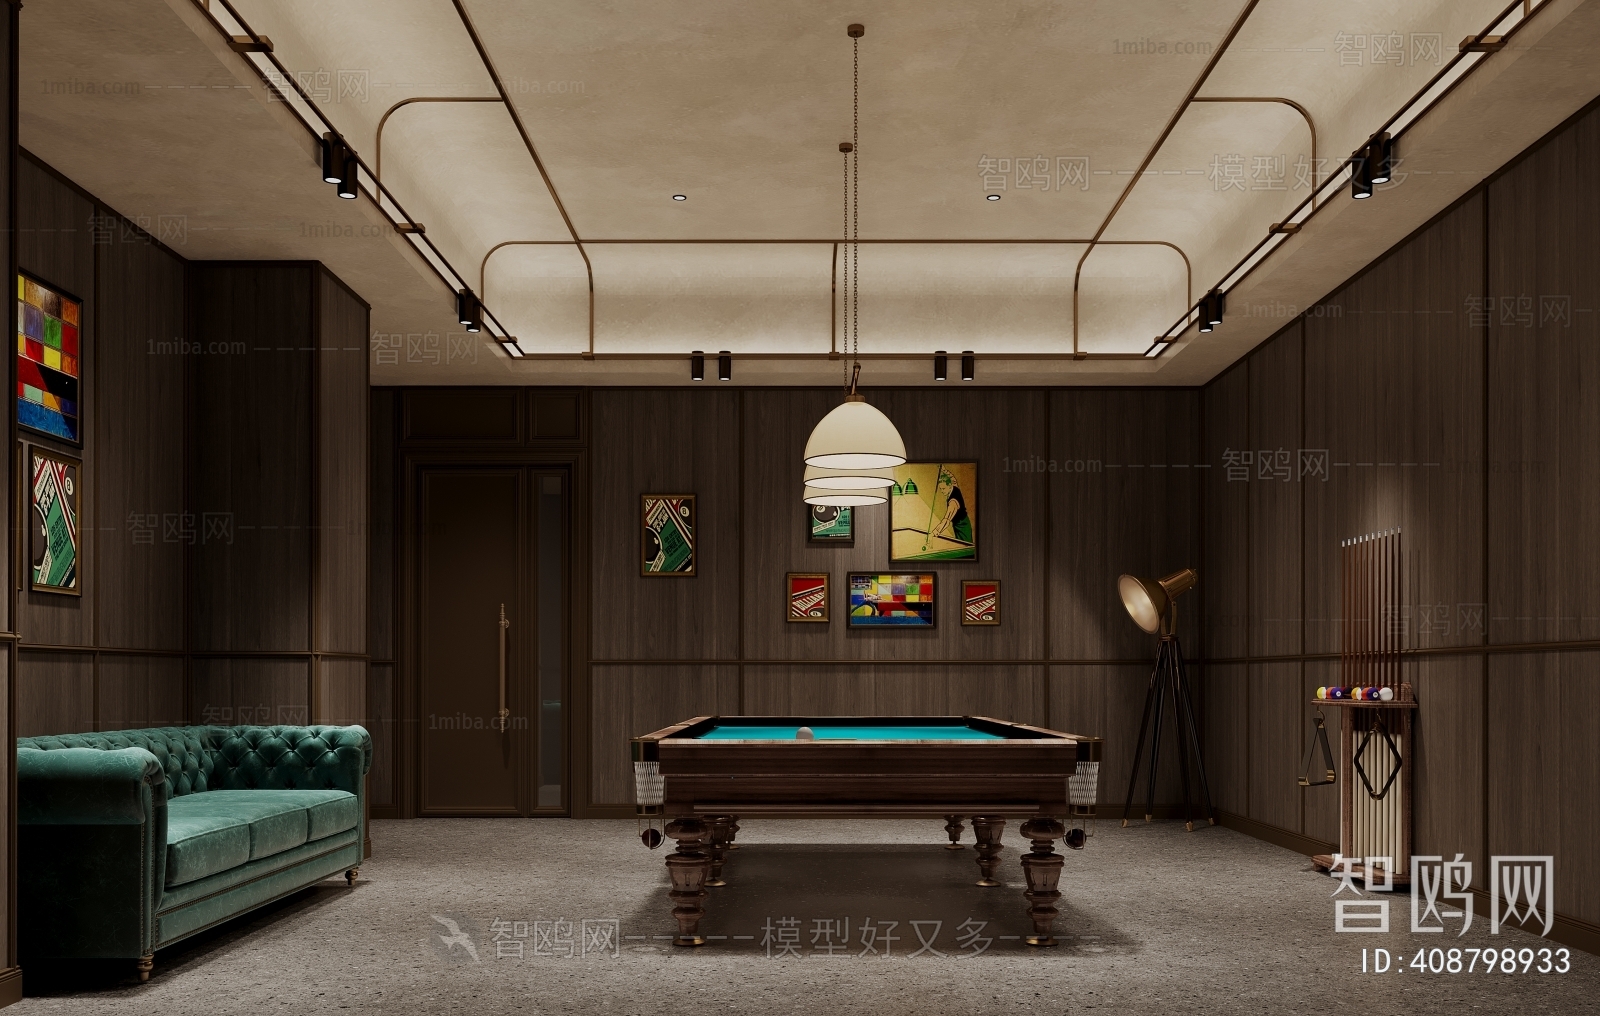 Simple European Style Billiards Room